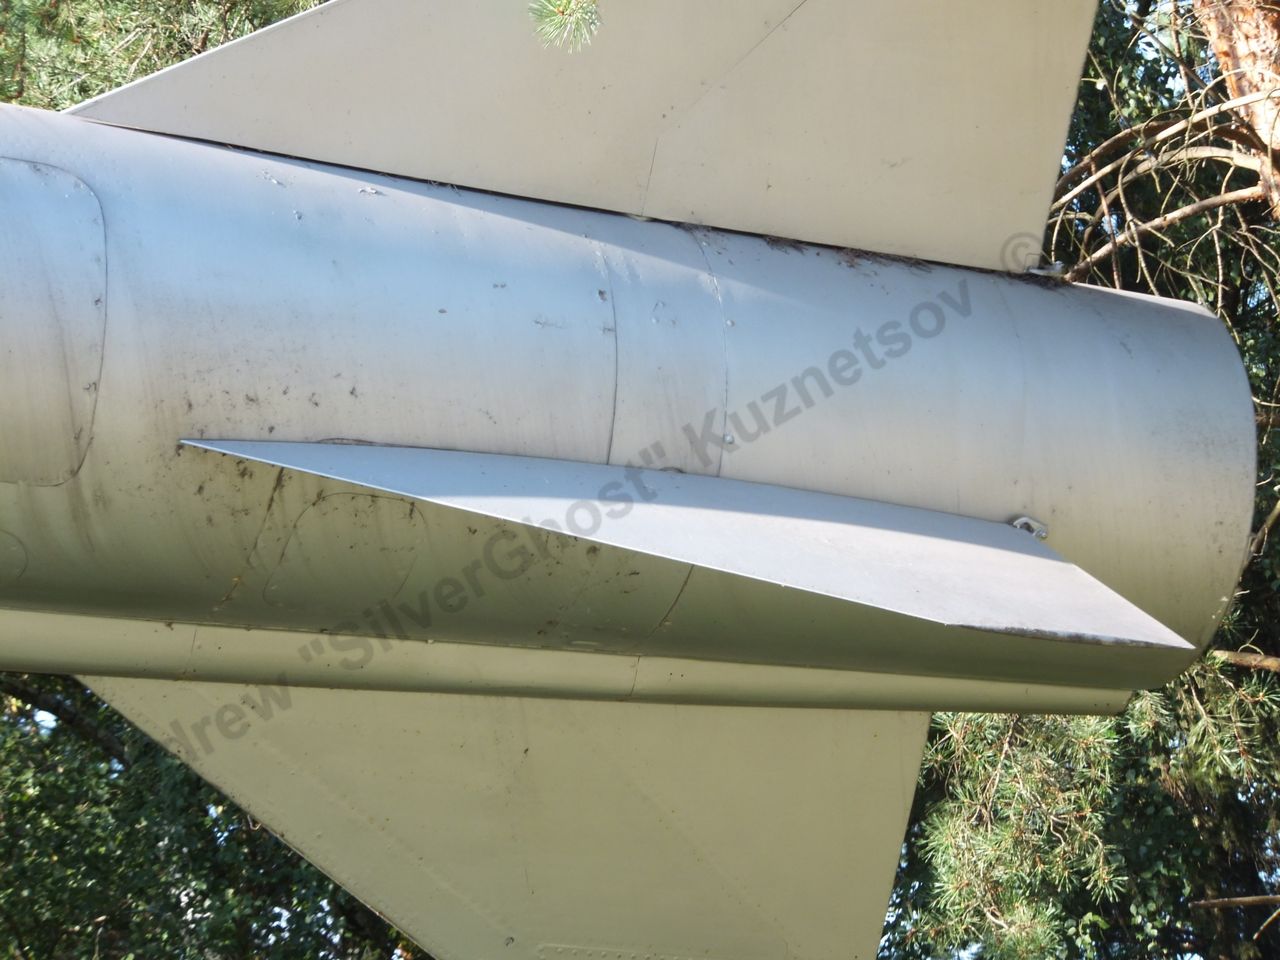 Kh-22 missile_0008.jpg